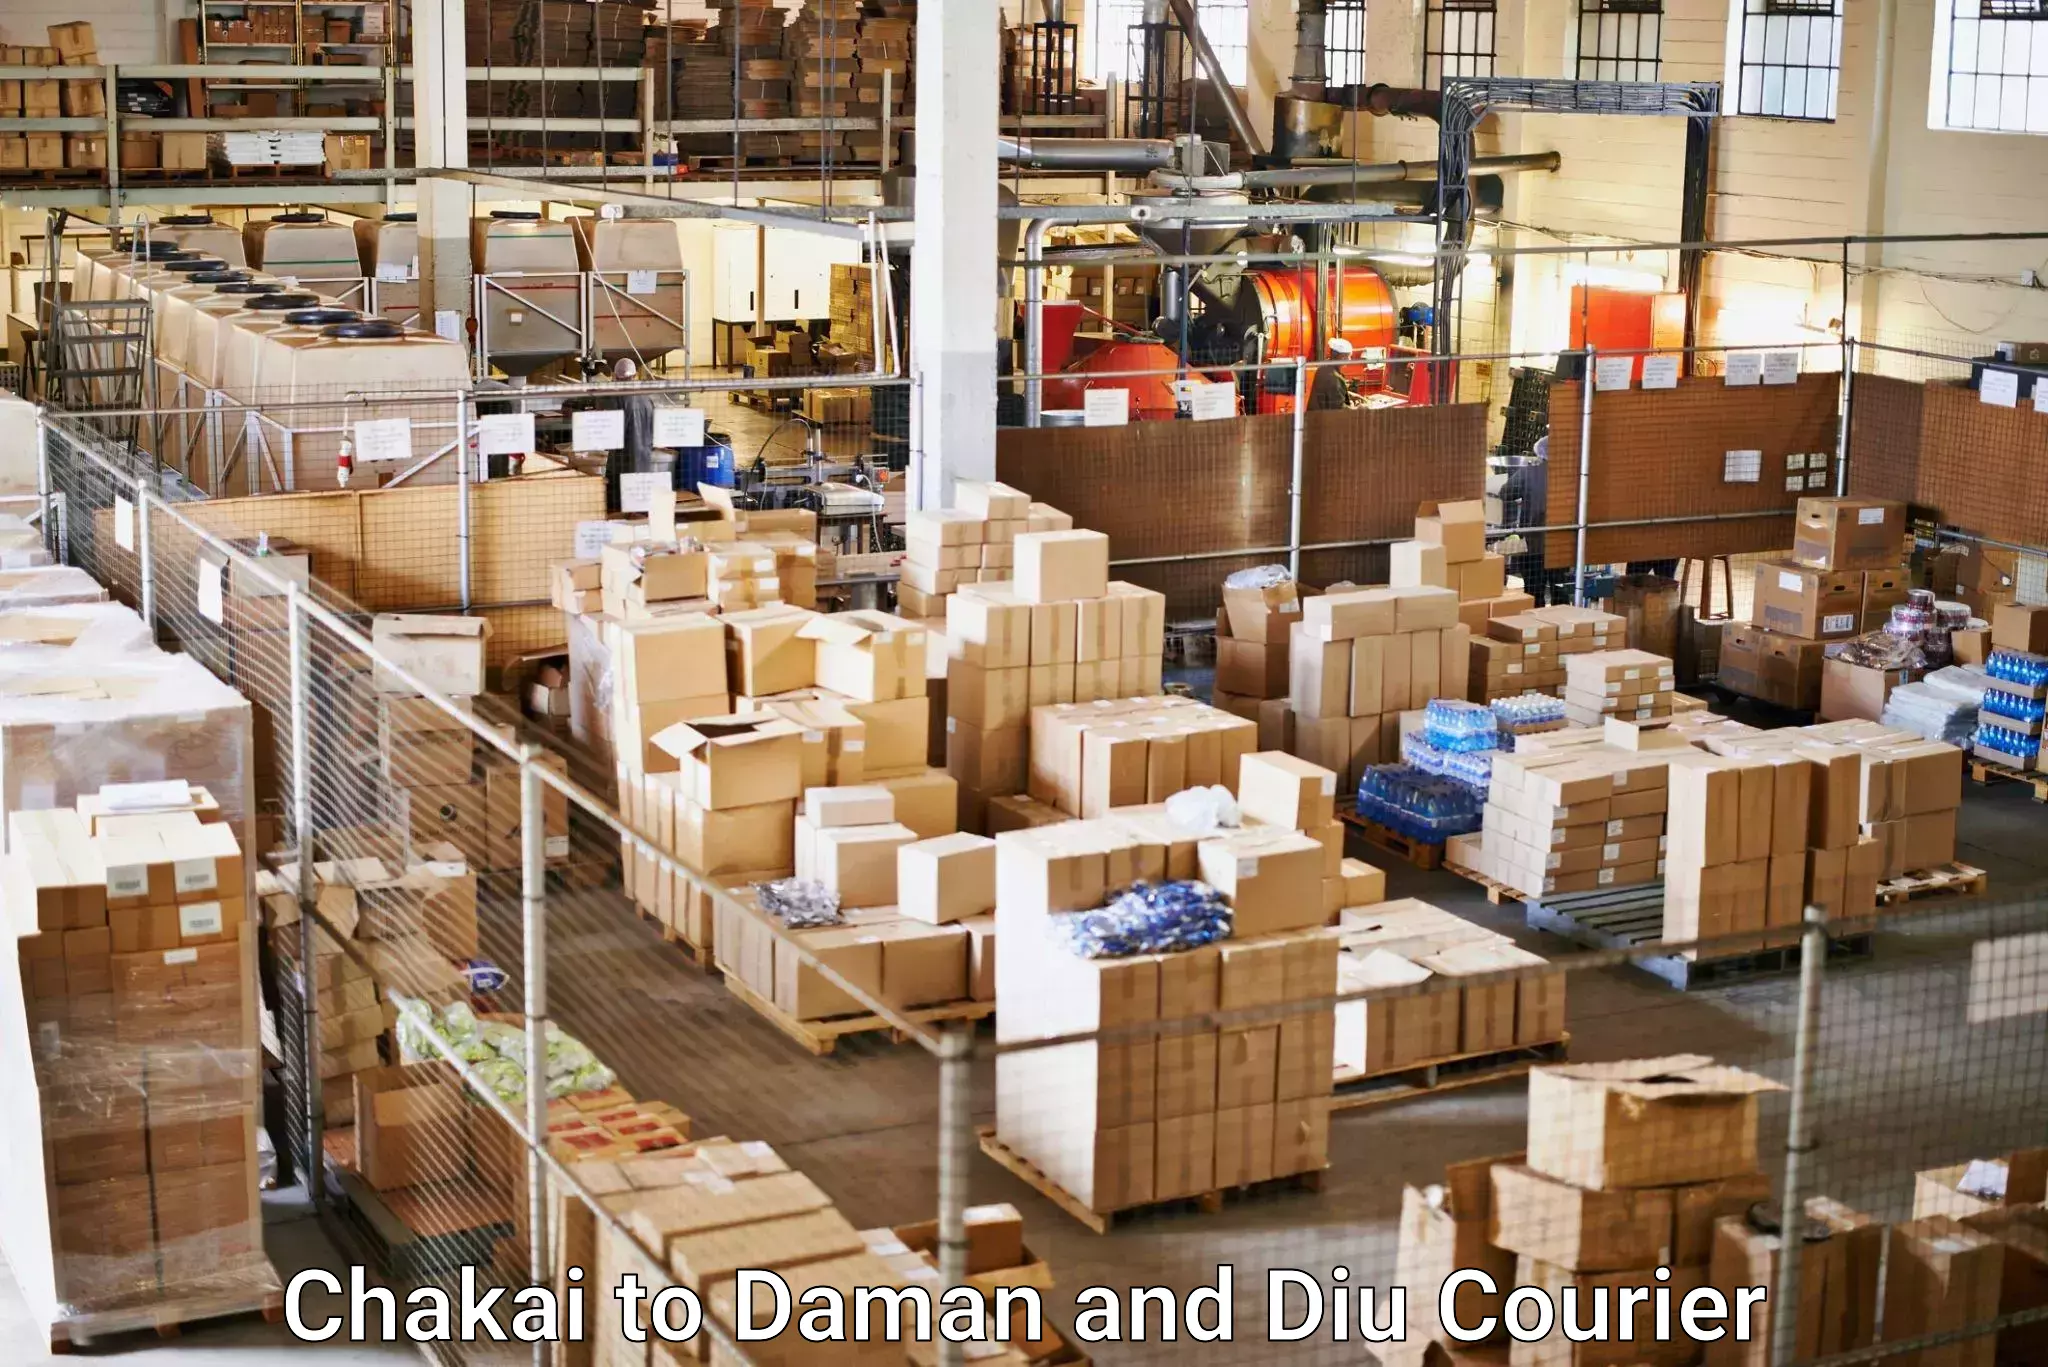 Efficient freight service Chakai to Daman and Diu